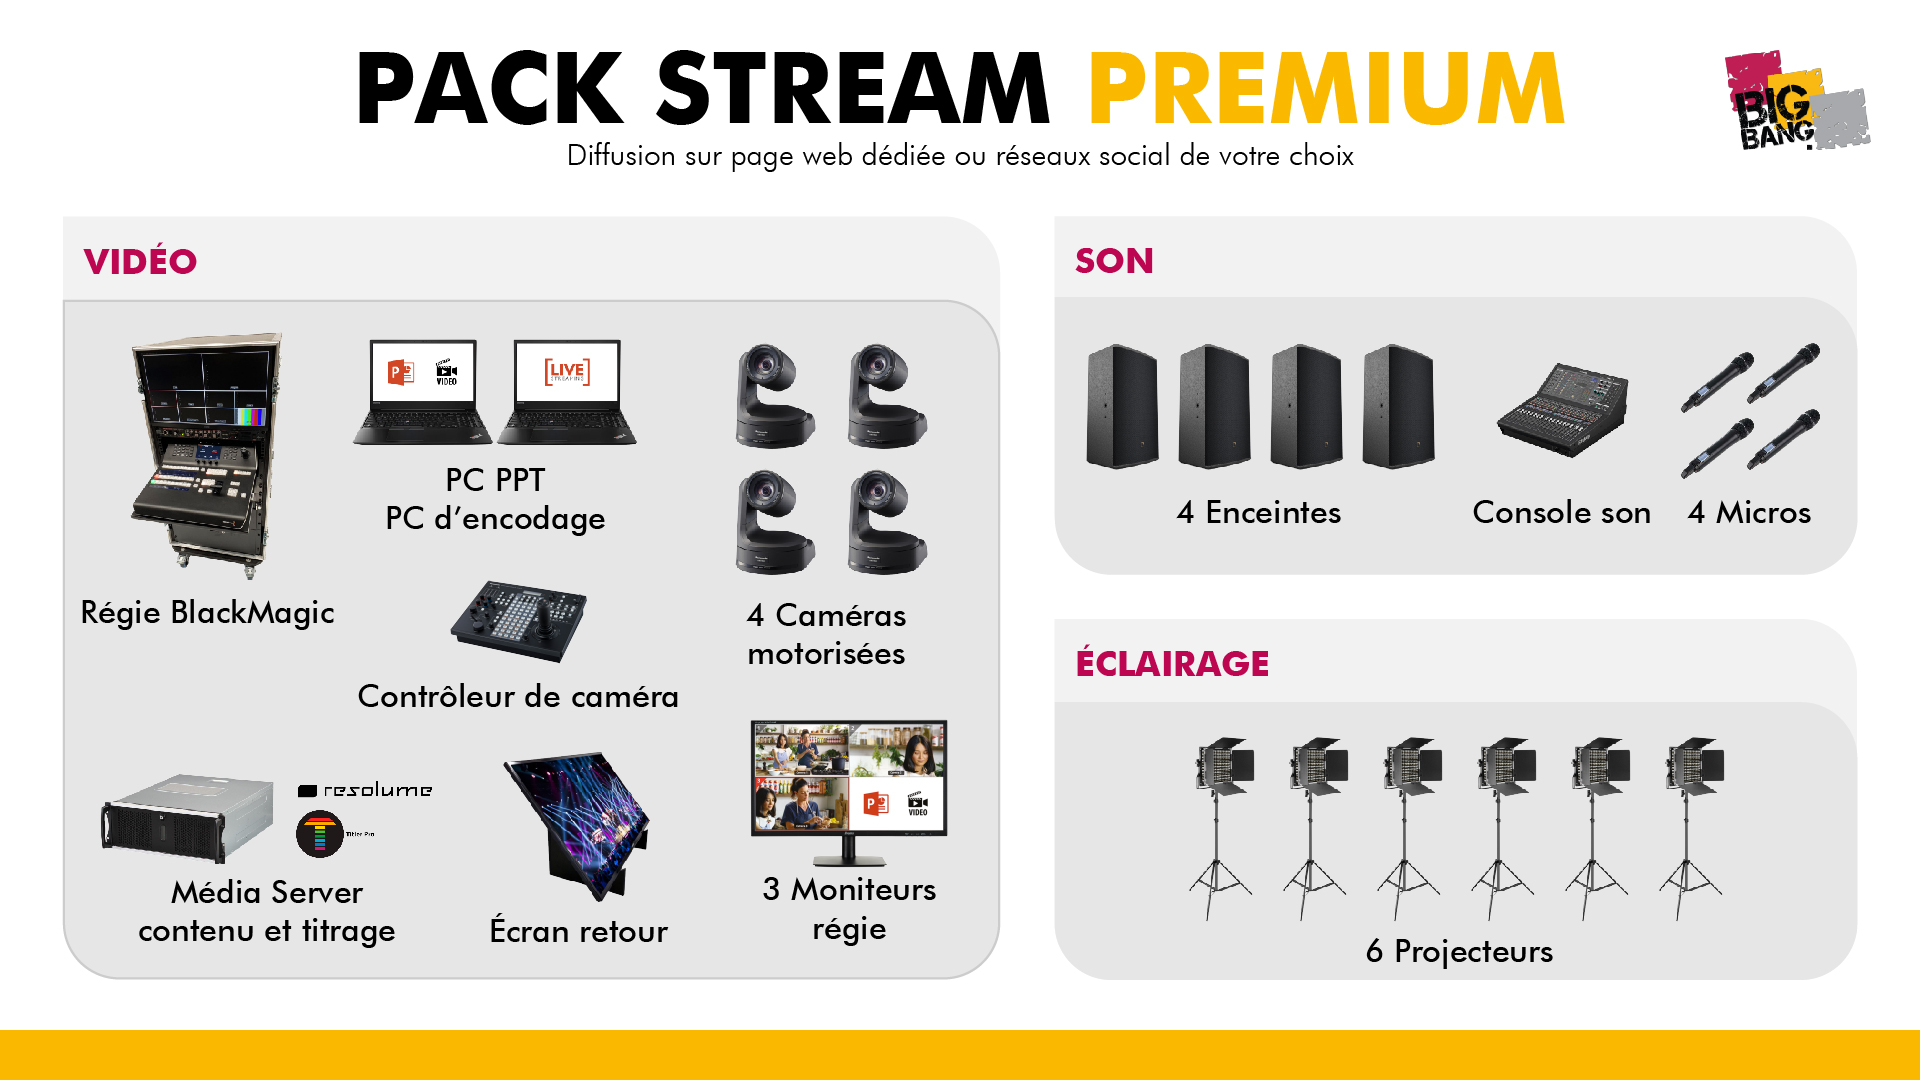 Big Bang - Pack stream premium